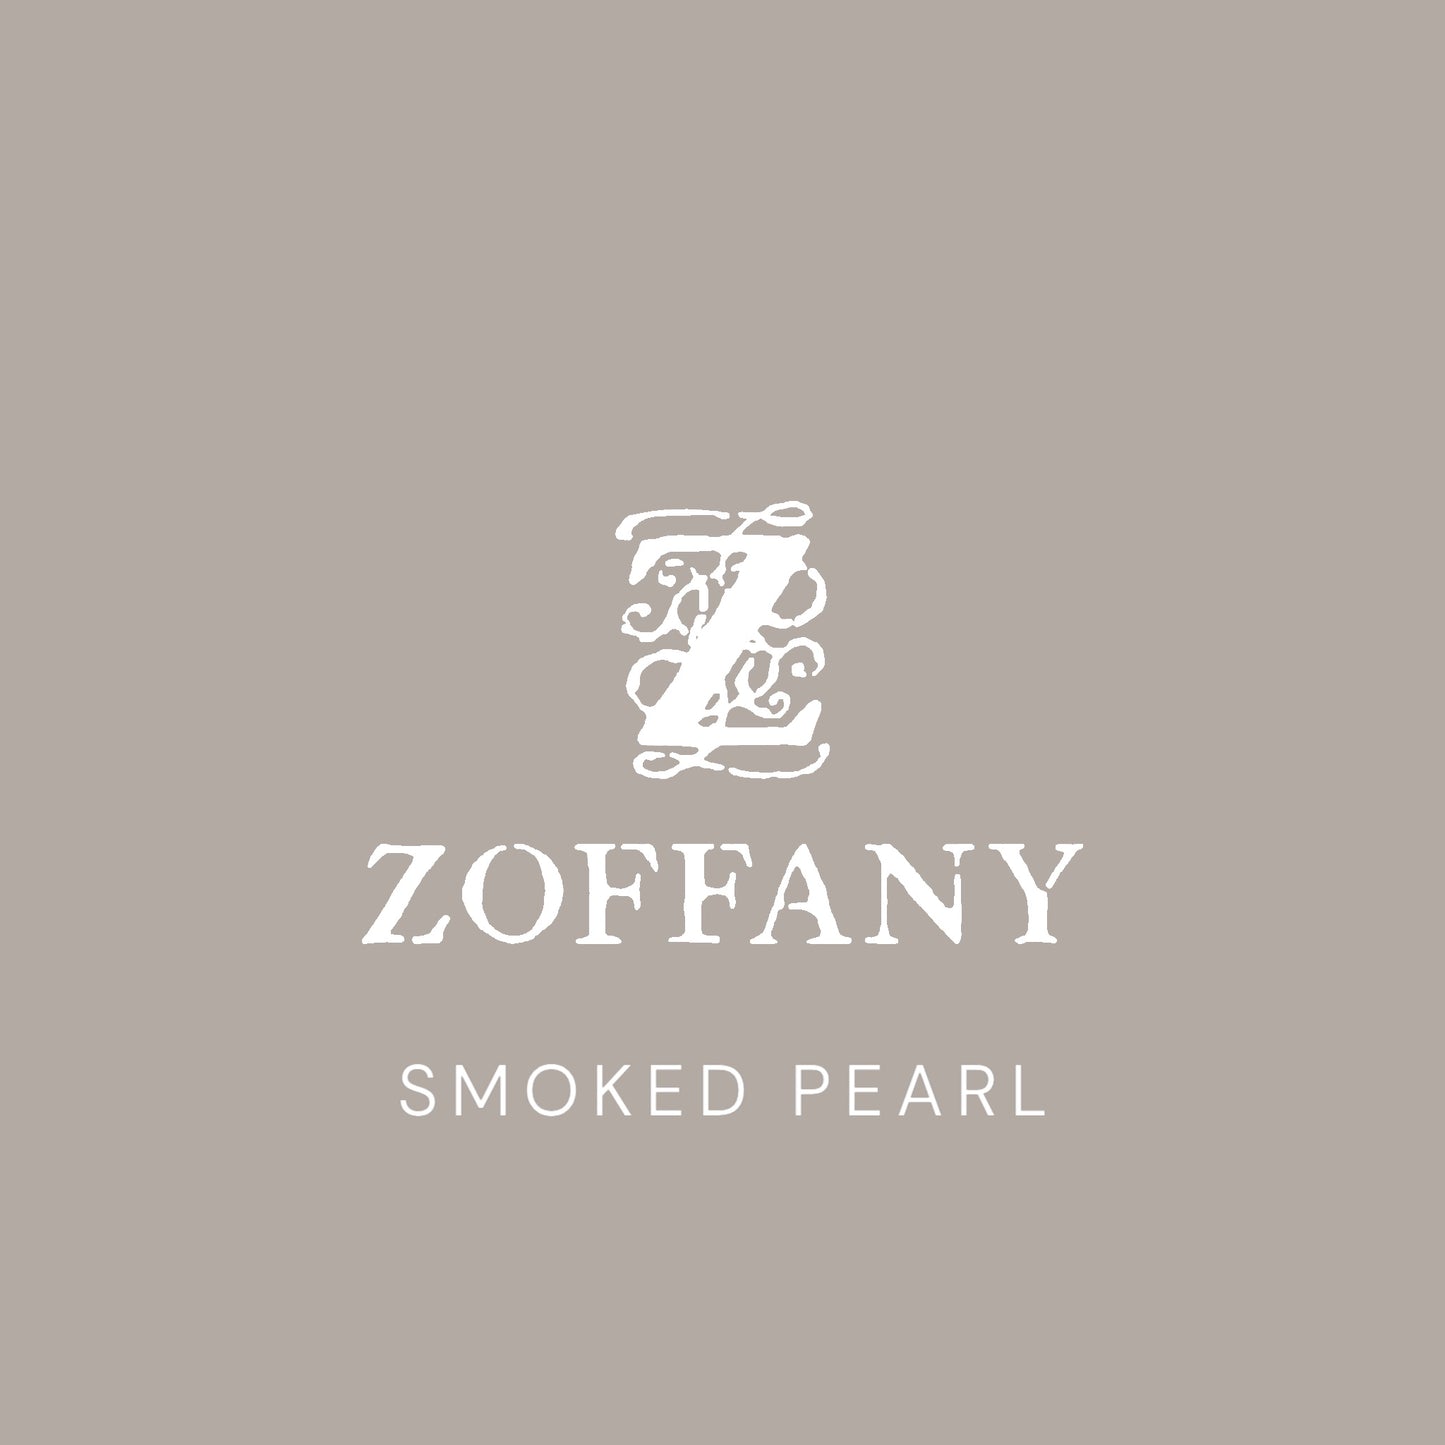 Zoffany's Smoked Pearl Paint